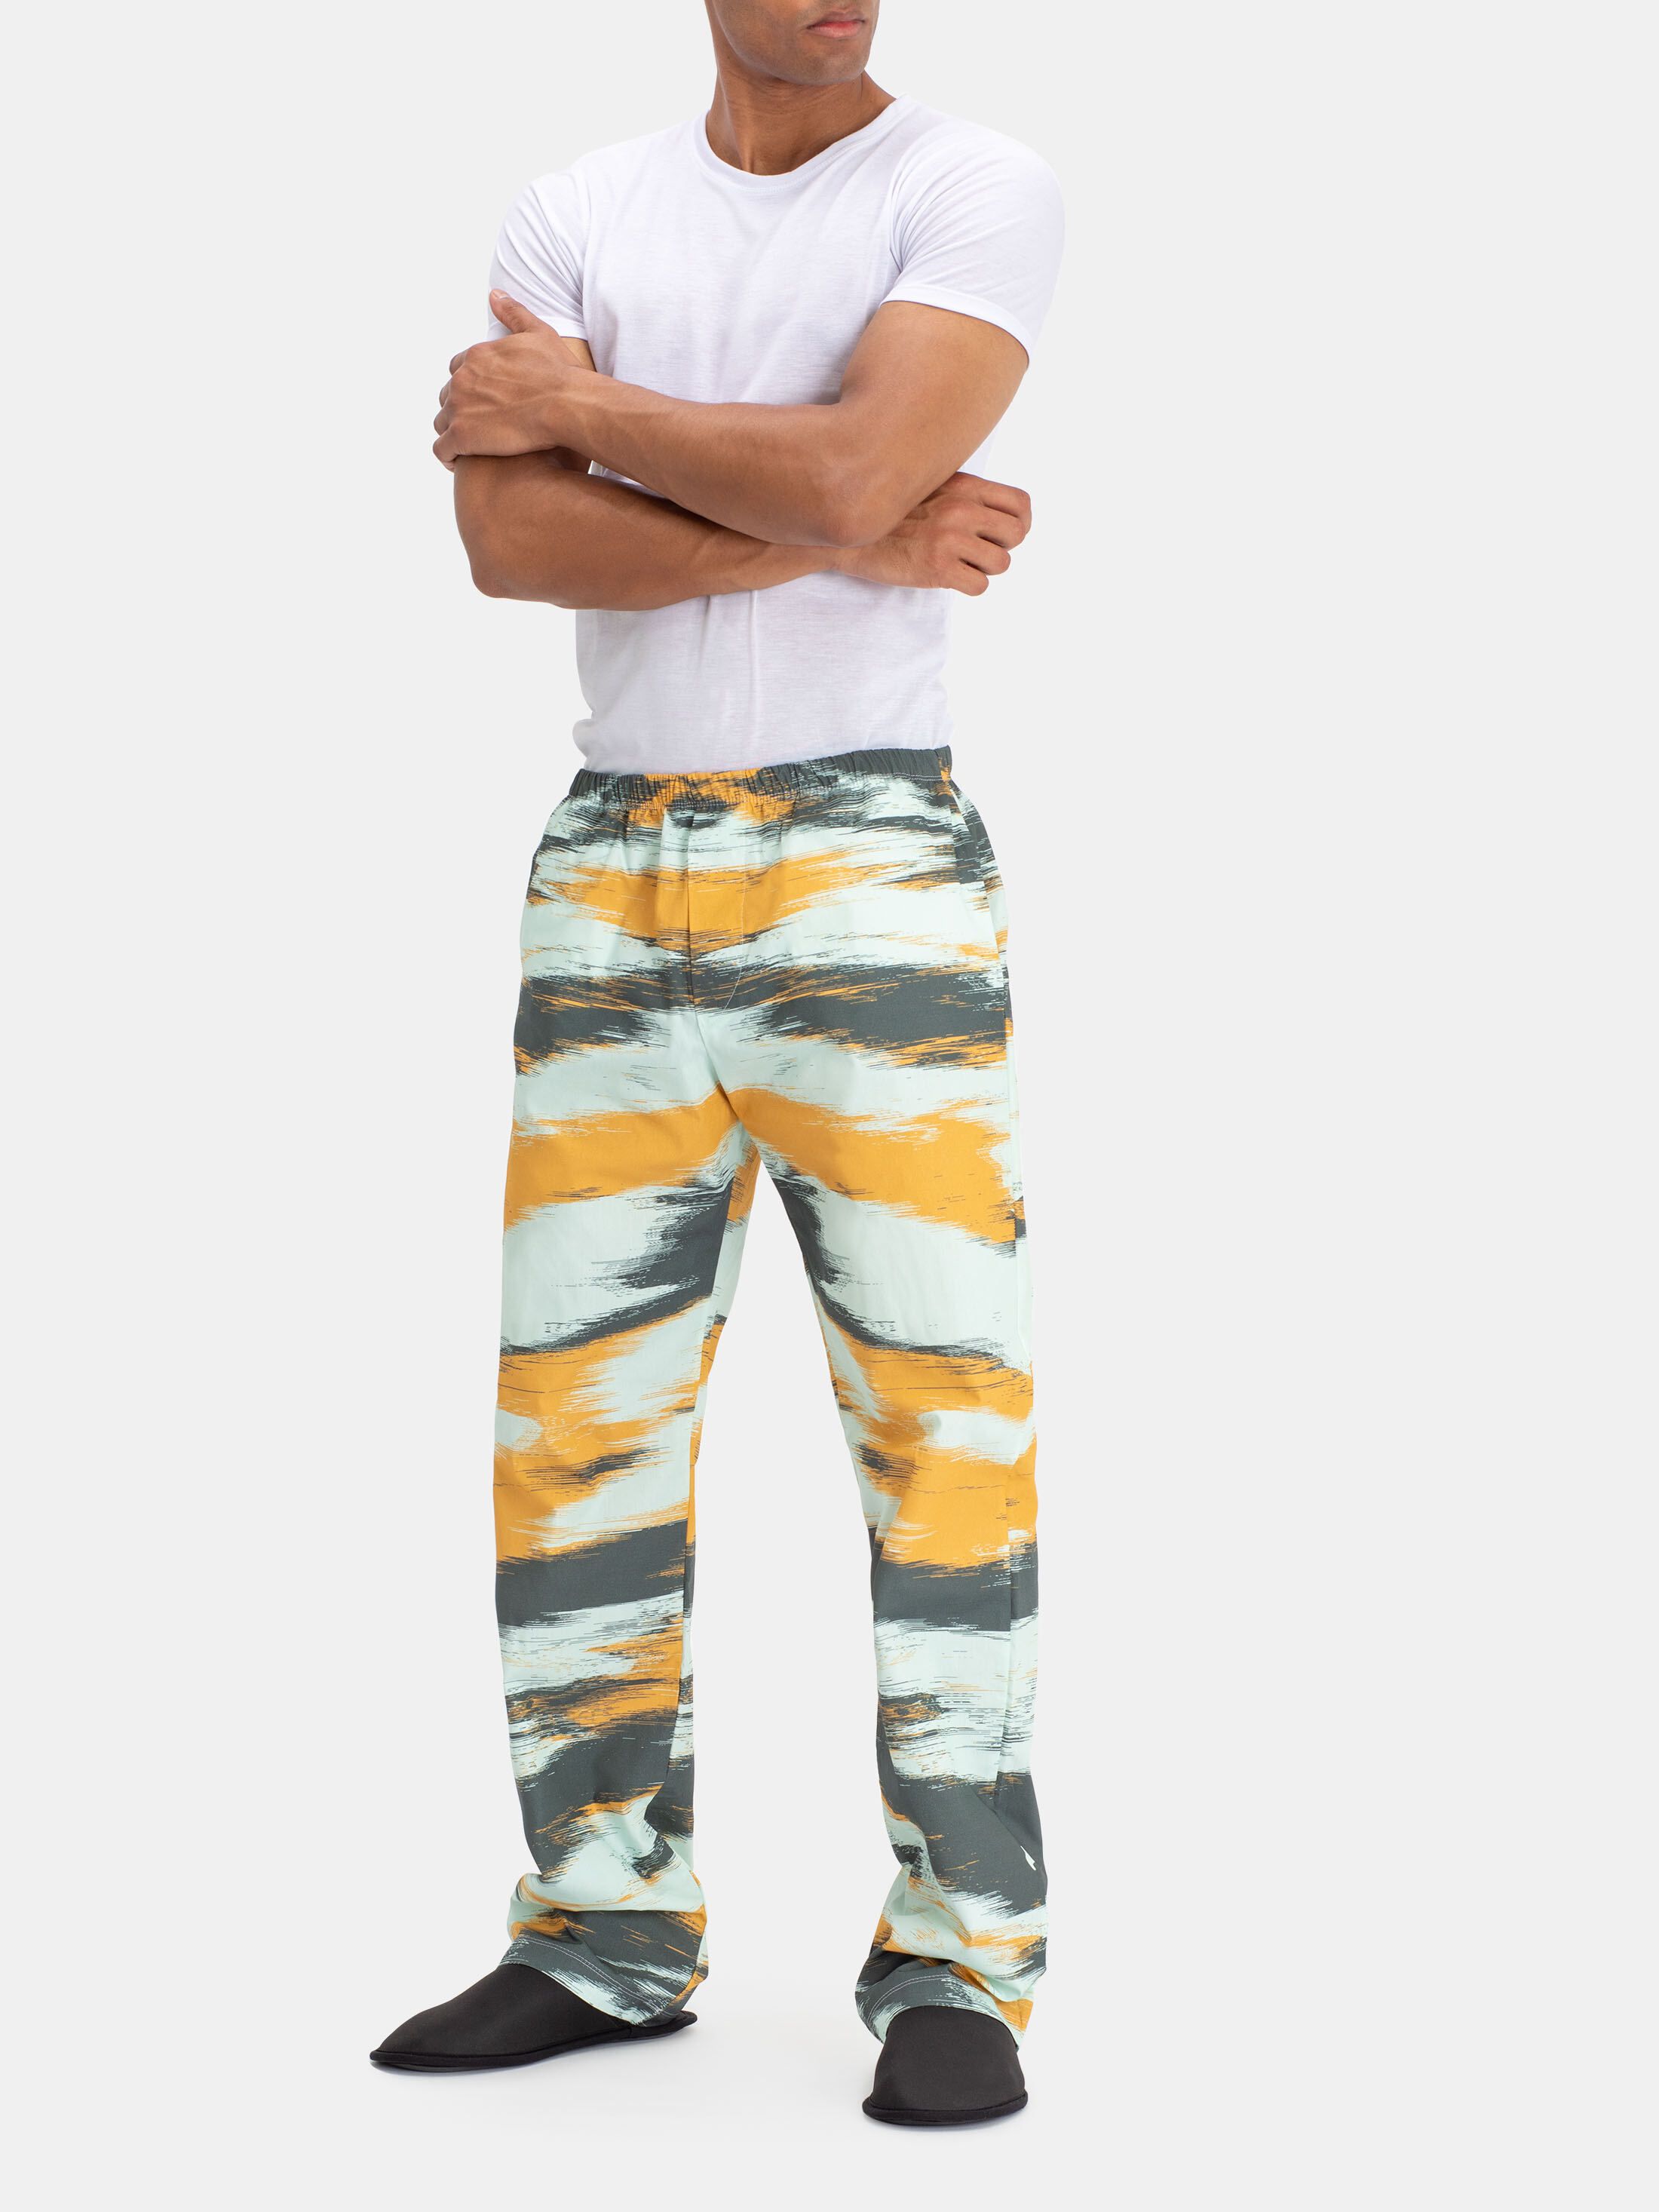 Create Personalised Pyjama Pants